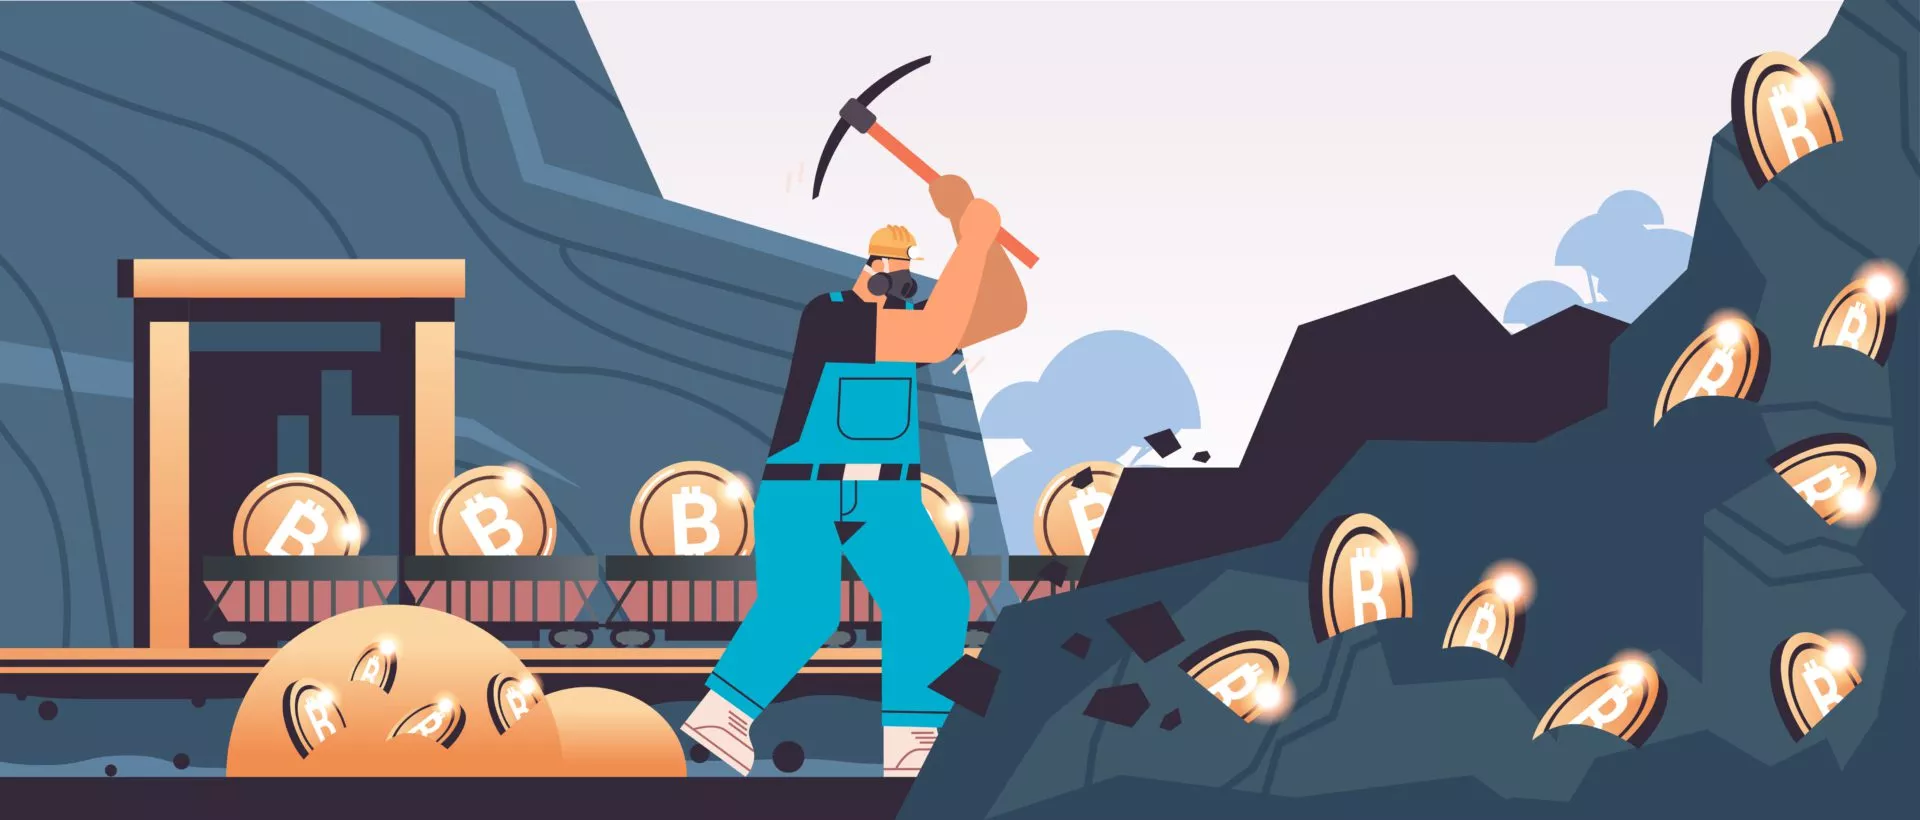 Man Miner Digging Bitcoin (BTC)